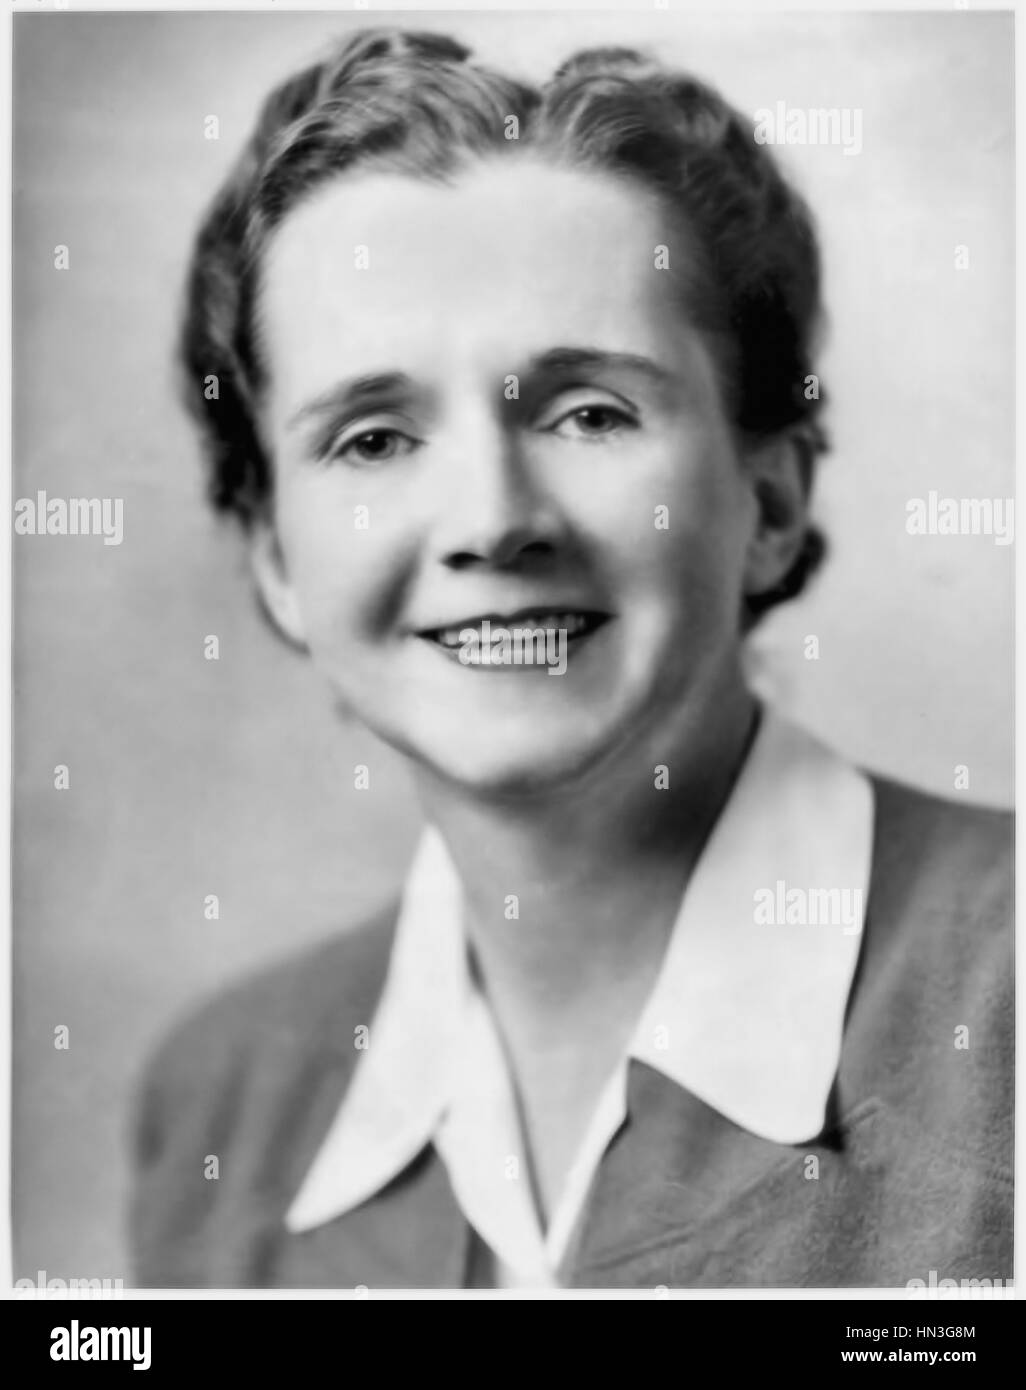 Rachel Carson (1907-1964) US-amerikanischer Meeresbiologe und Autor von "Silent Spring" (1962) über die durch Pestizide verursachten Umweltschäden. Stockfoto